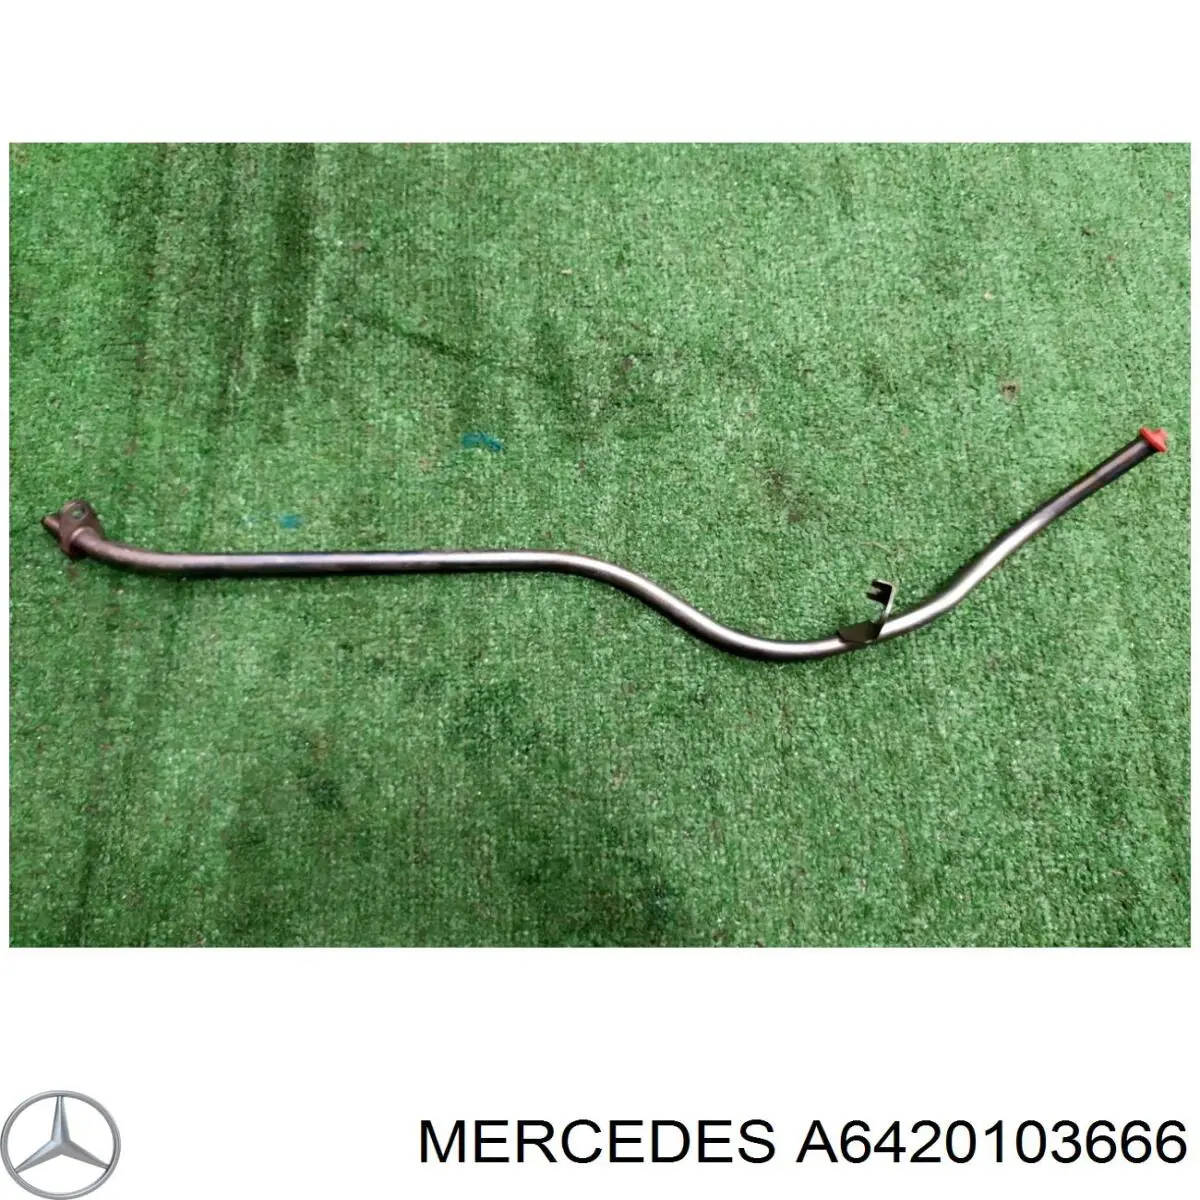 Направляющая щупа-индикатора уровня масла в двигателе на Mercedes ML/GLE (W166)